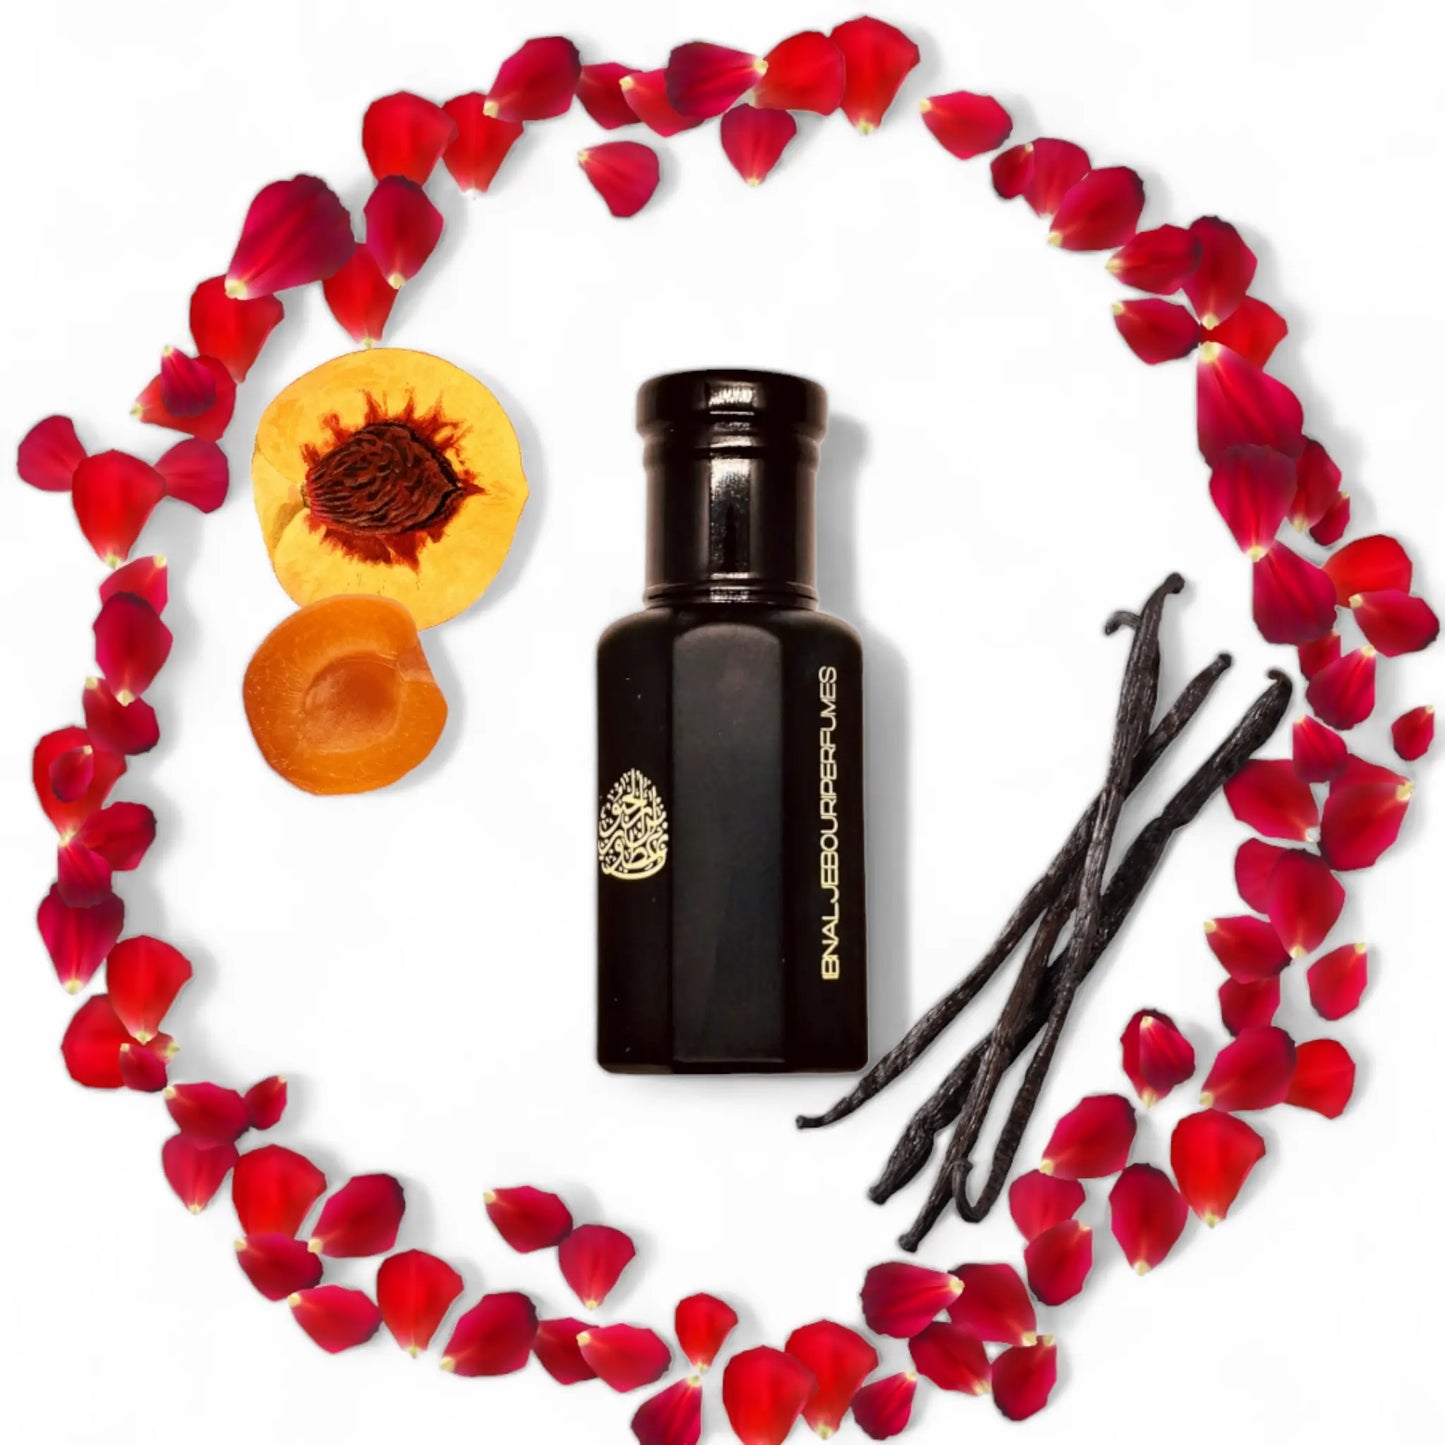 Lumière d'Orient Women's Perfume oil that is floral musky fragrances in a elegant black bottle 